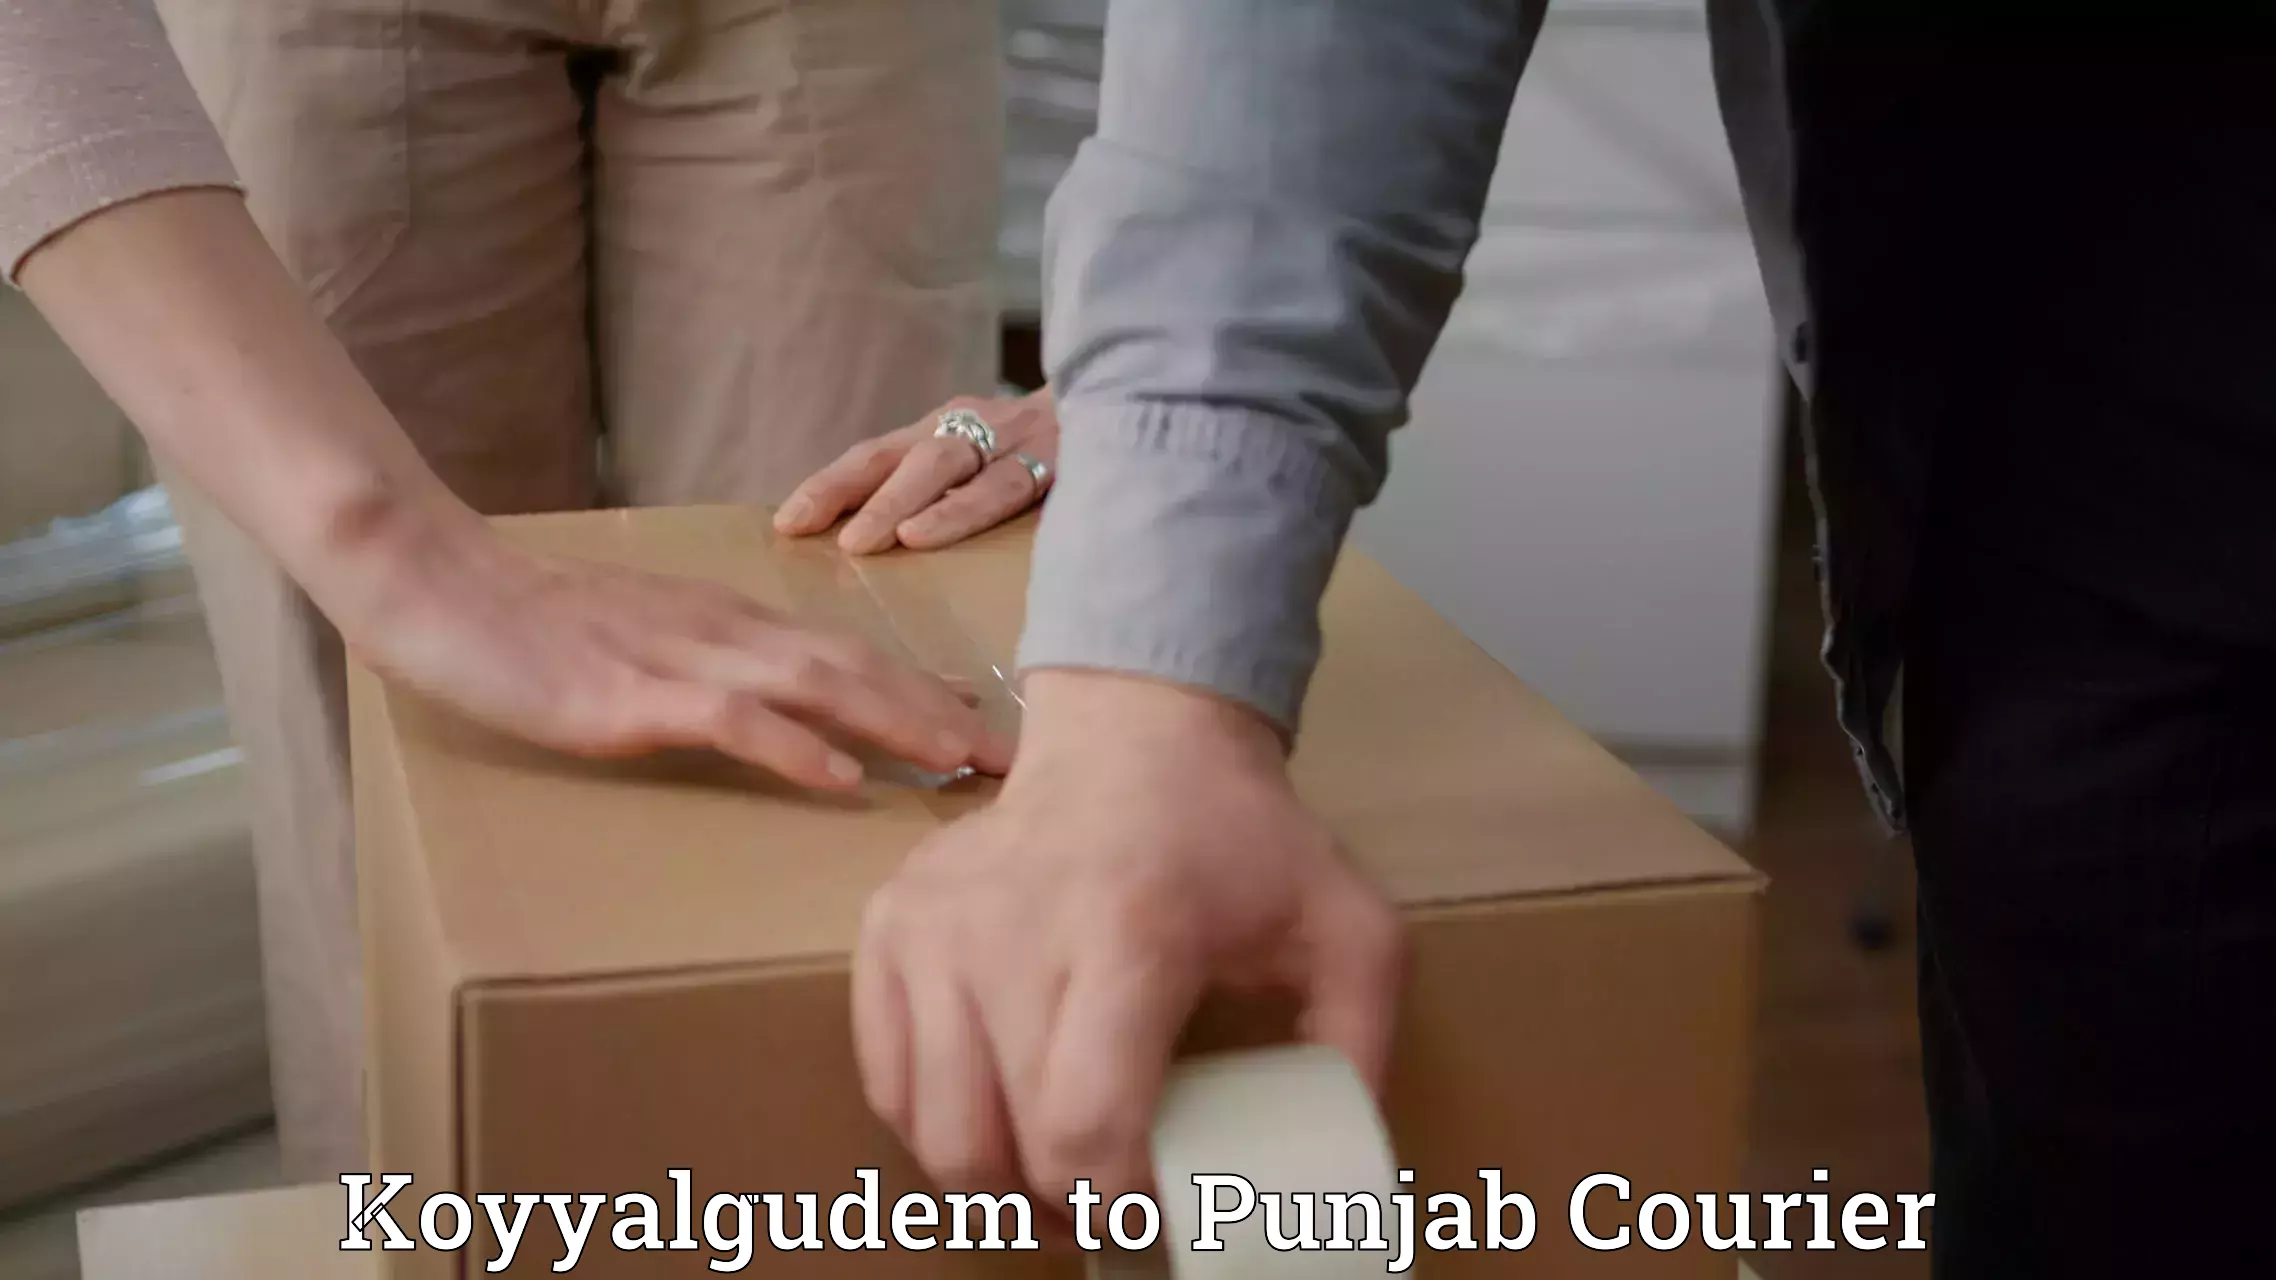 Custom courier rates Koyyalgudem to Central University of Punjab Bathinda